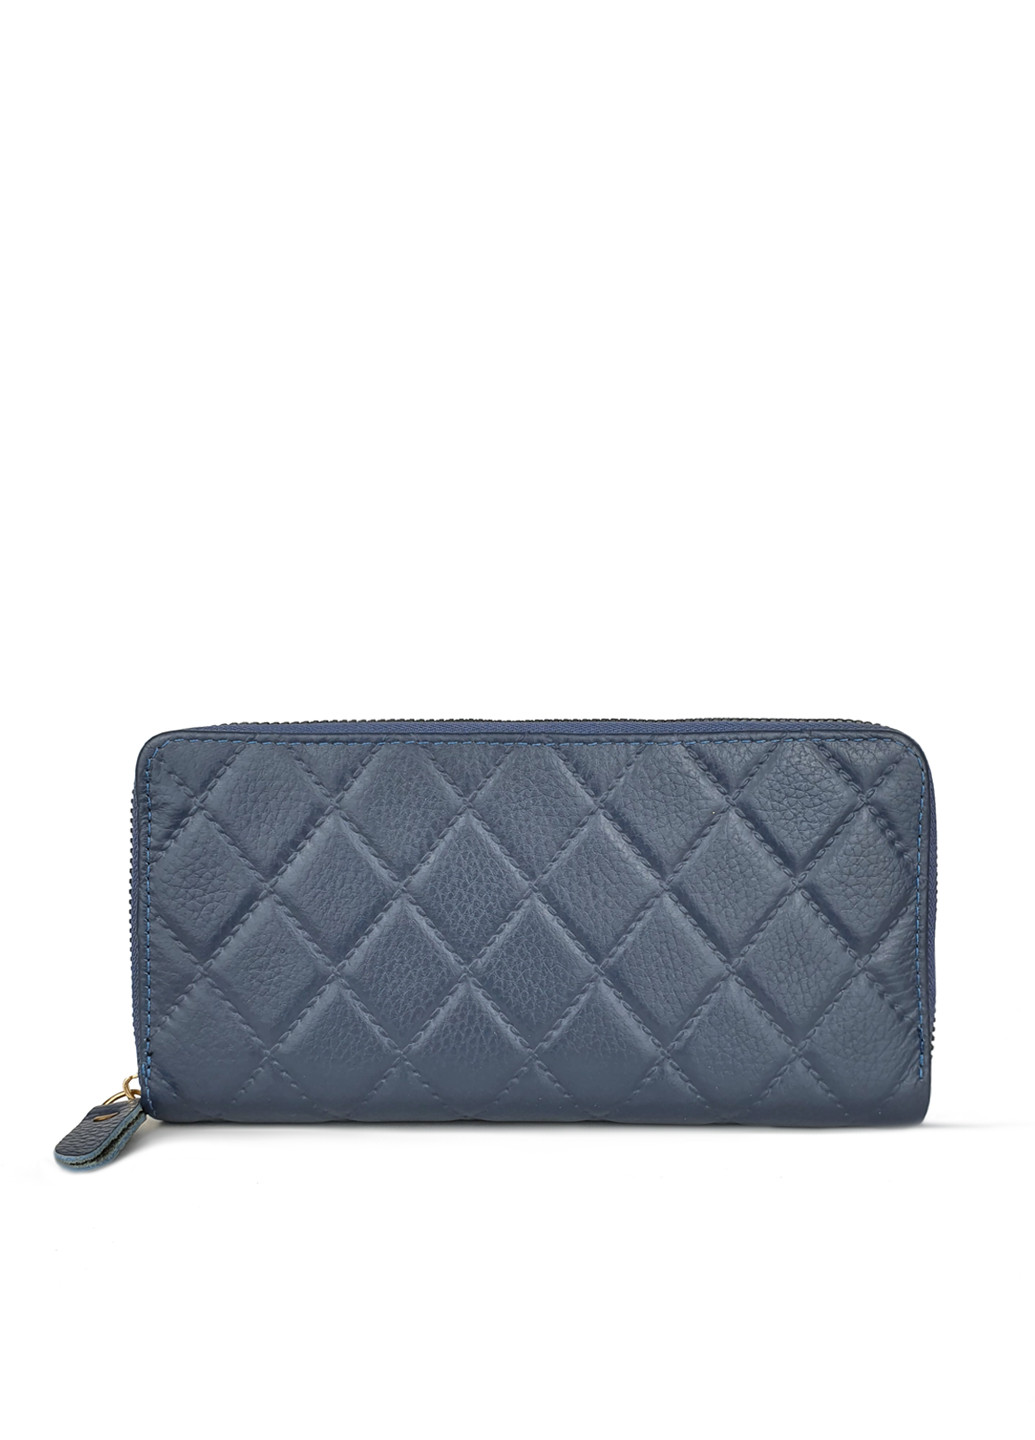 Женский кошелек портмоне на молнии кожаный синего цвета 19*10*2 Fashion (252033303)